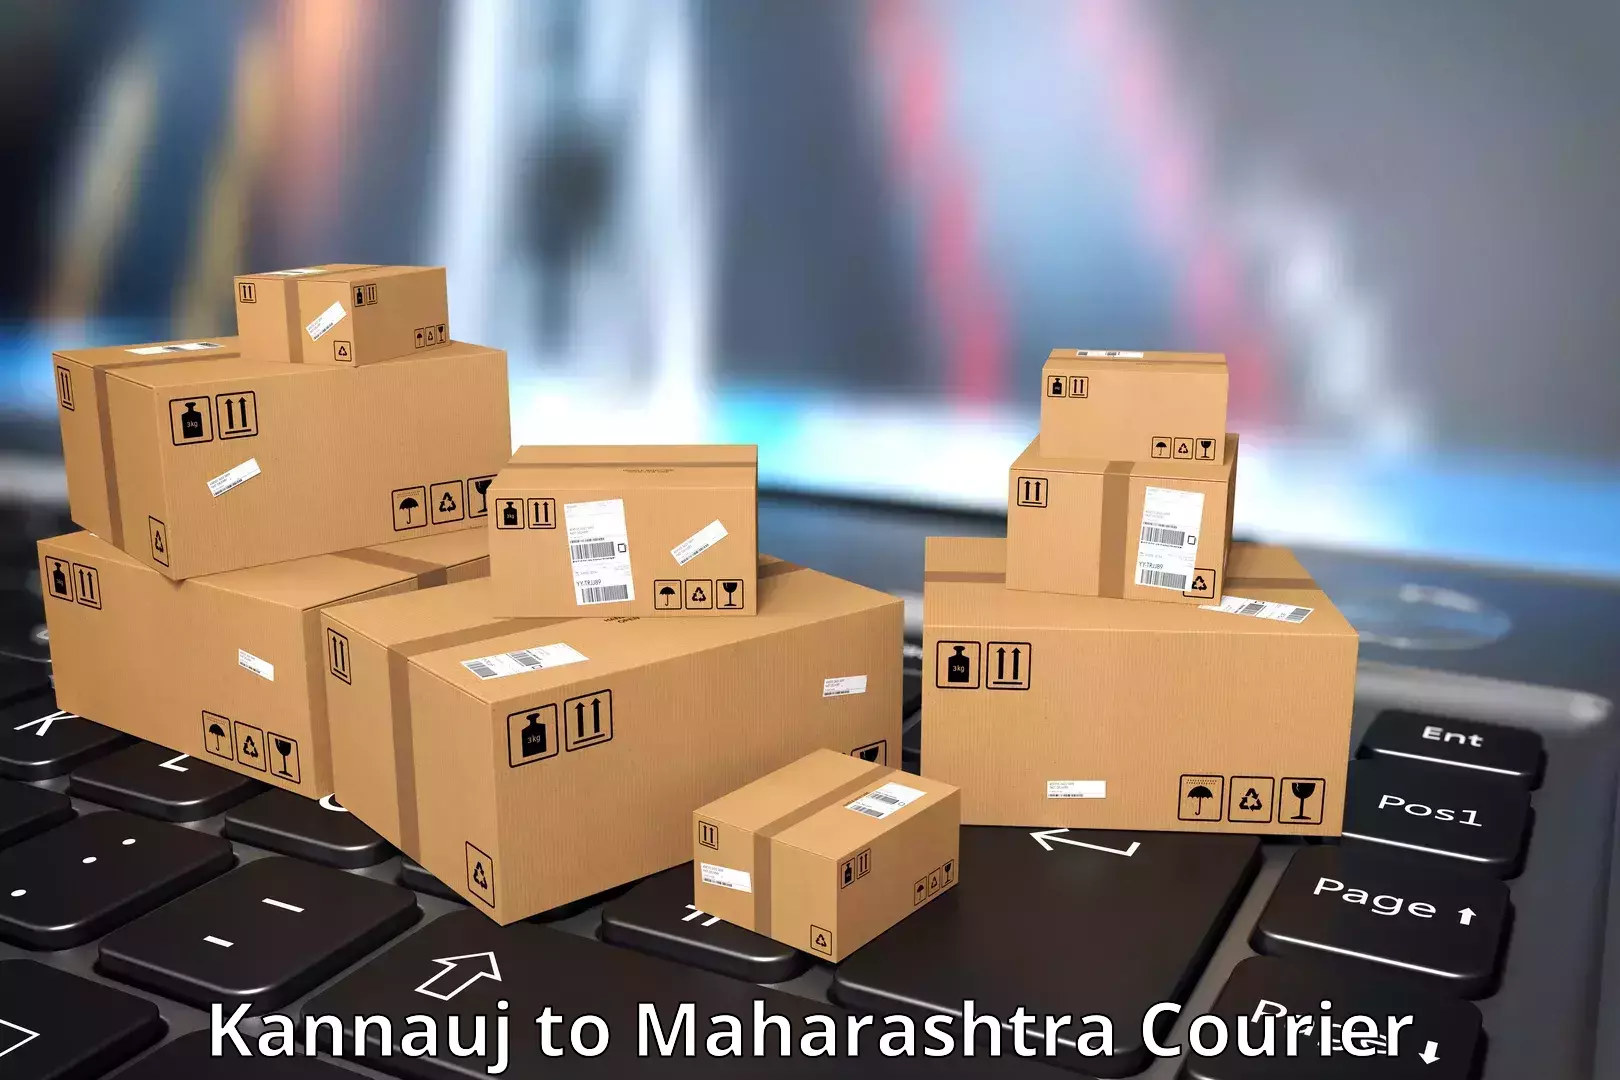 Courier service partnerships Kannauj to Rahimatpur